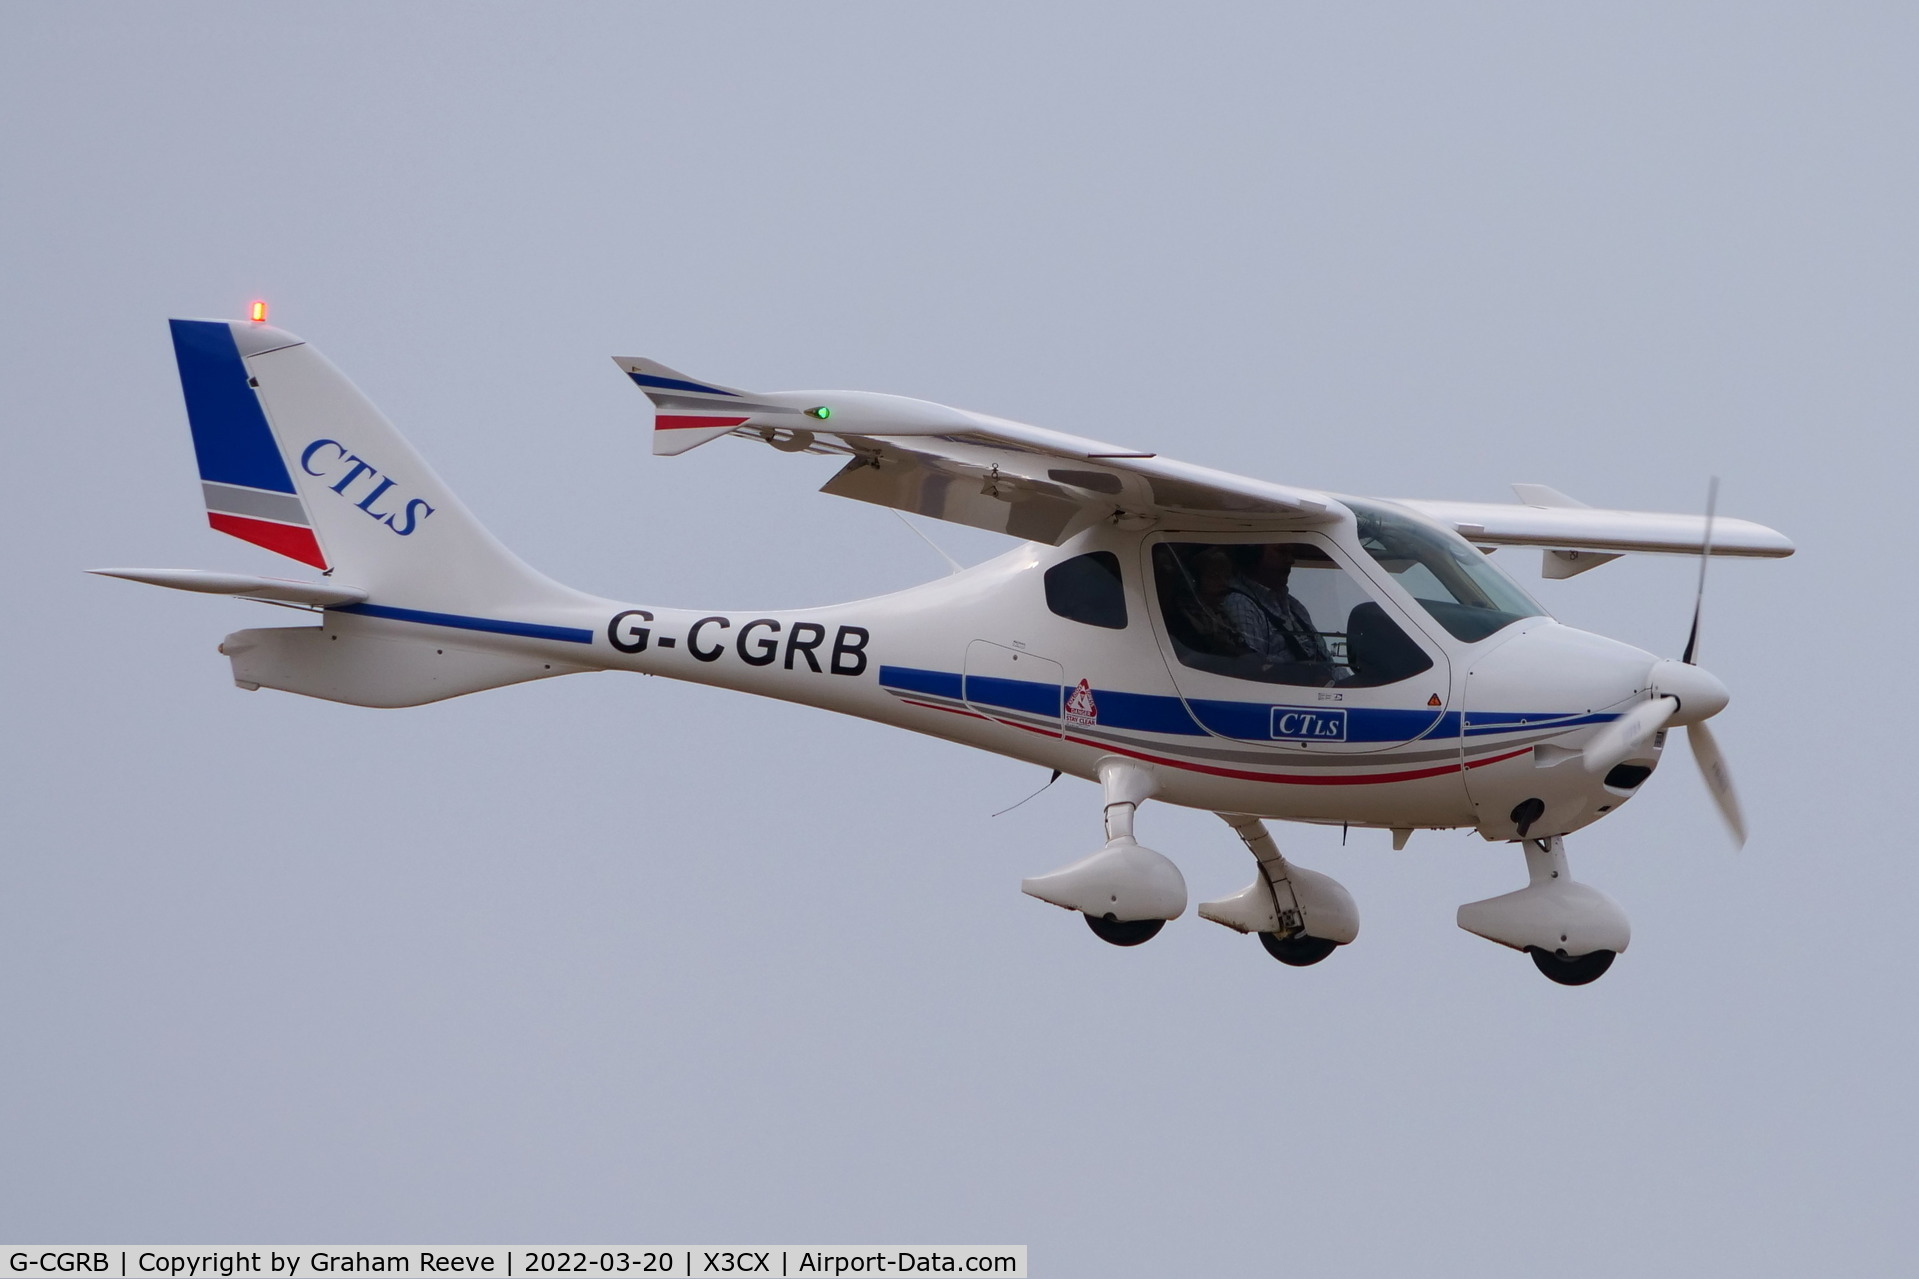 G-CGRB, 2010 Flight Design CT-LS C/N F-10-07-10, Landing at Northrepps.